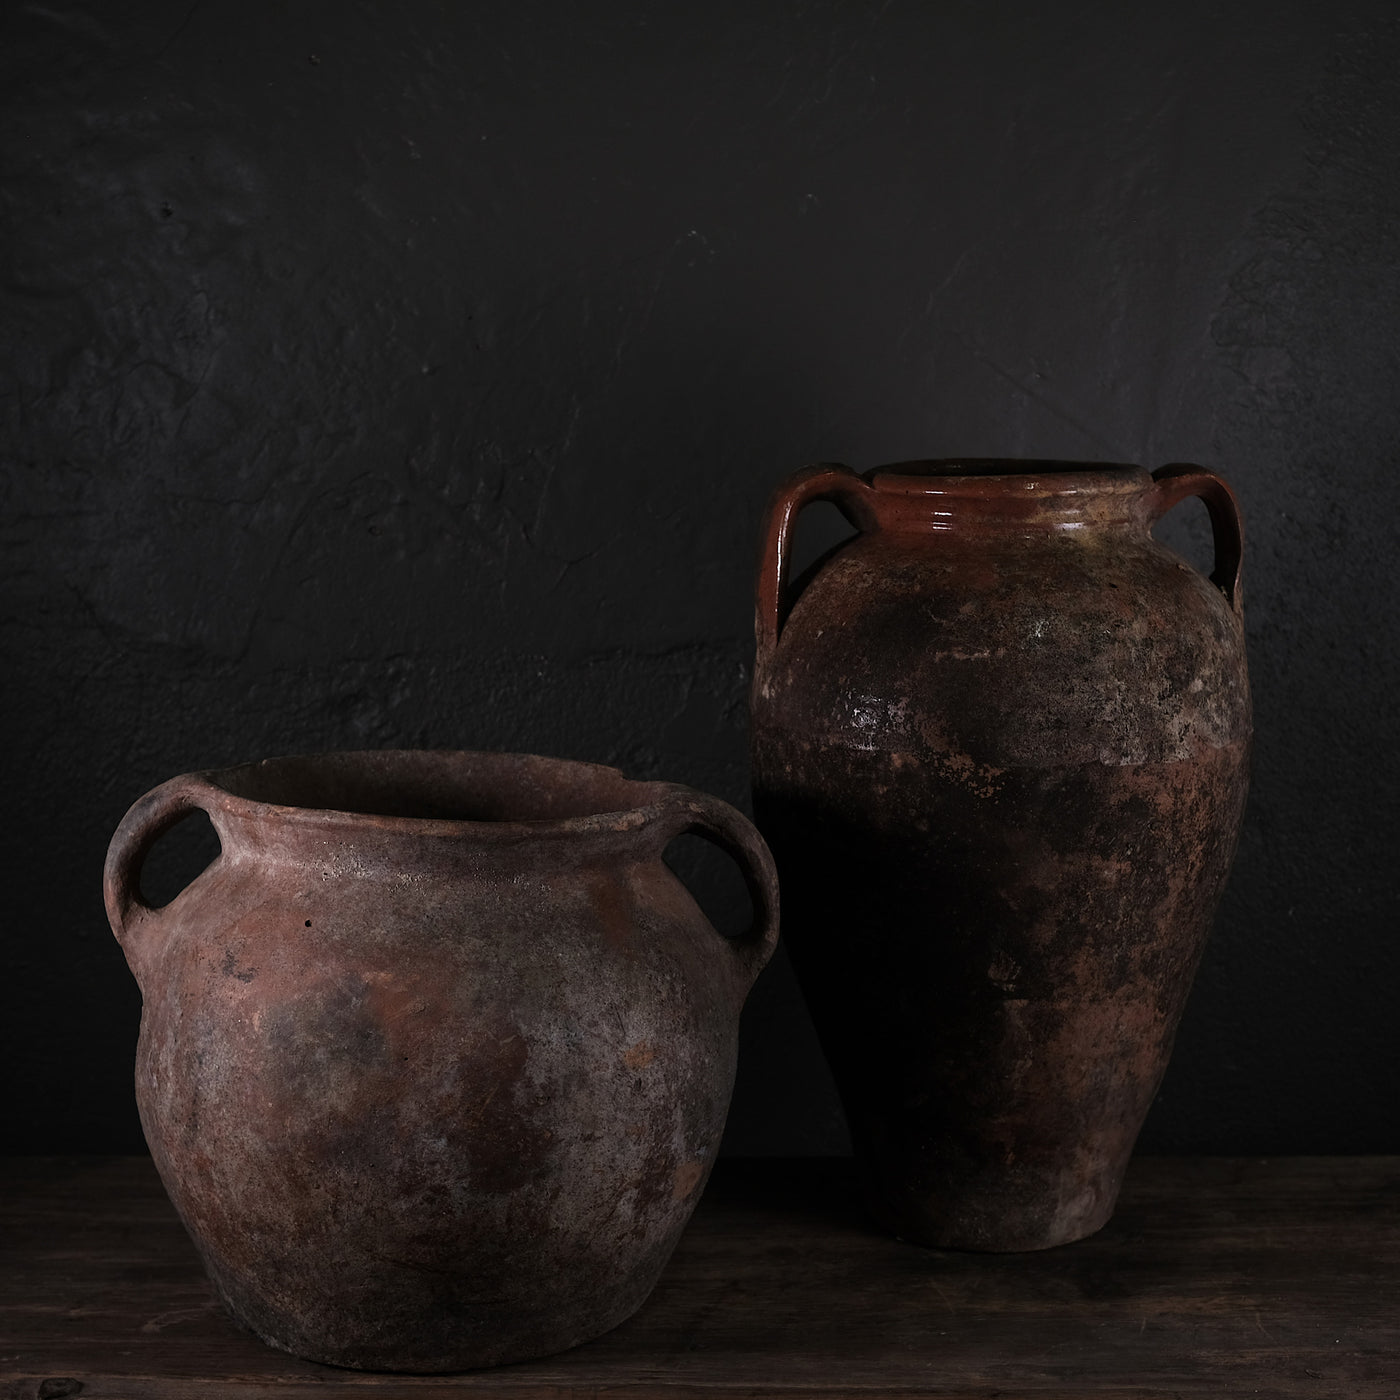 Kilis - Ancienne poterie turque